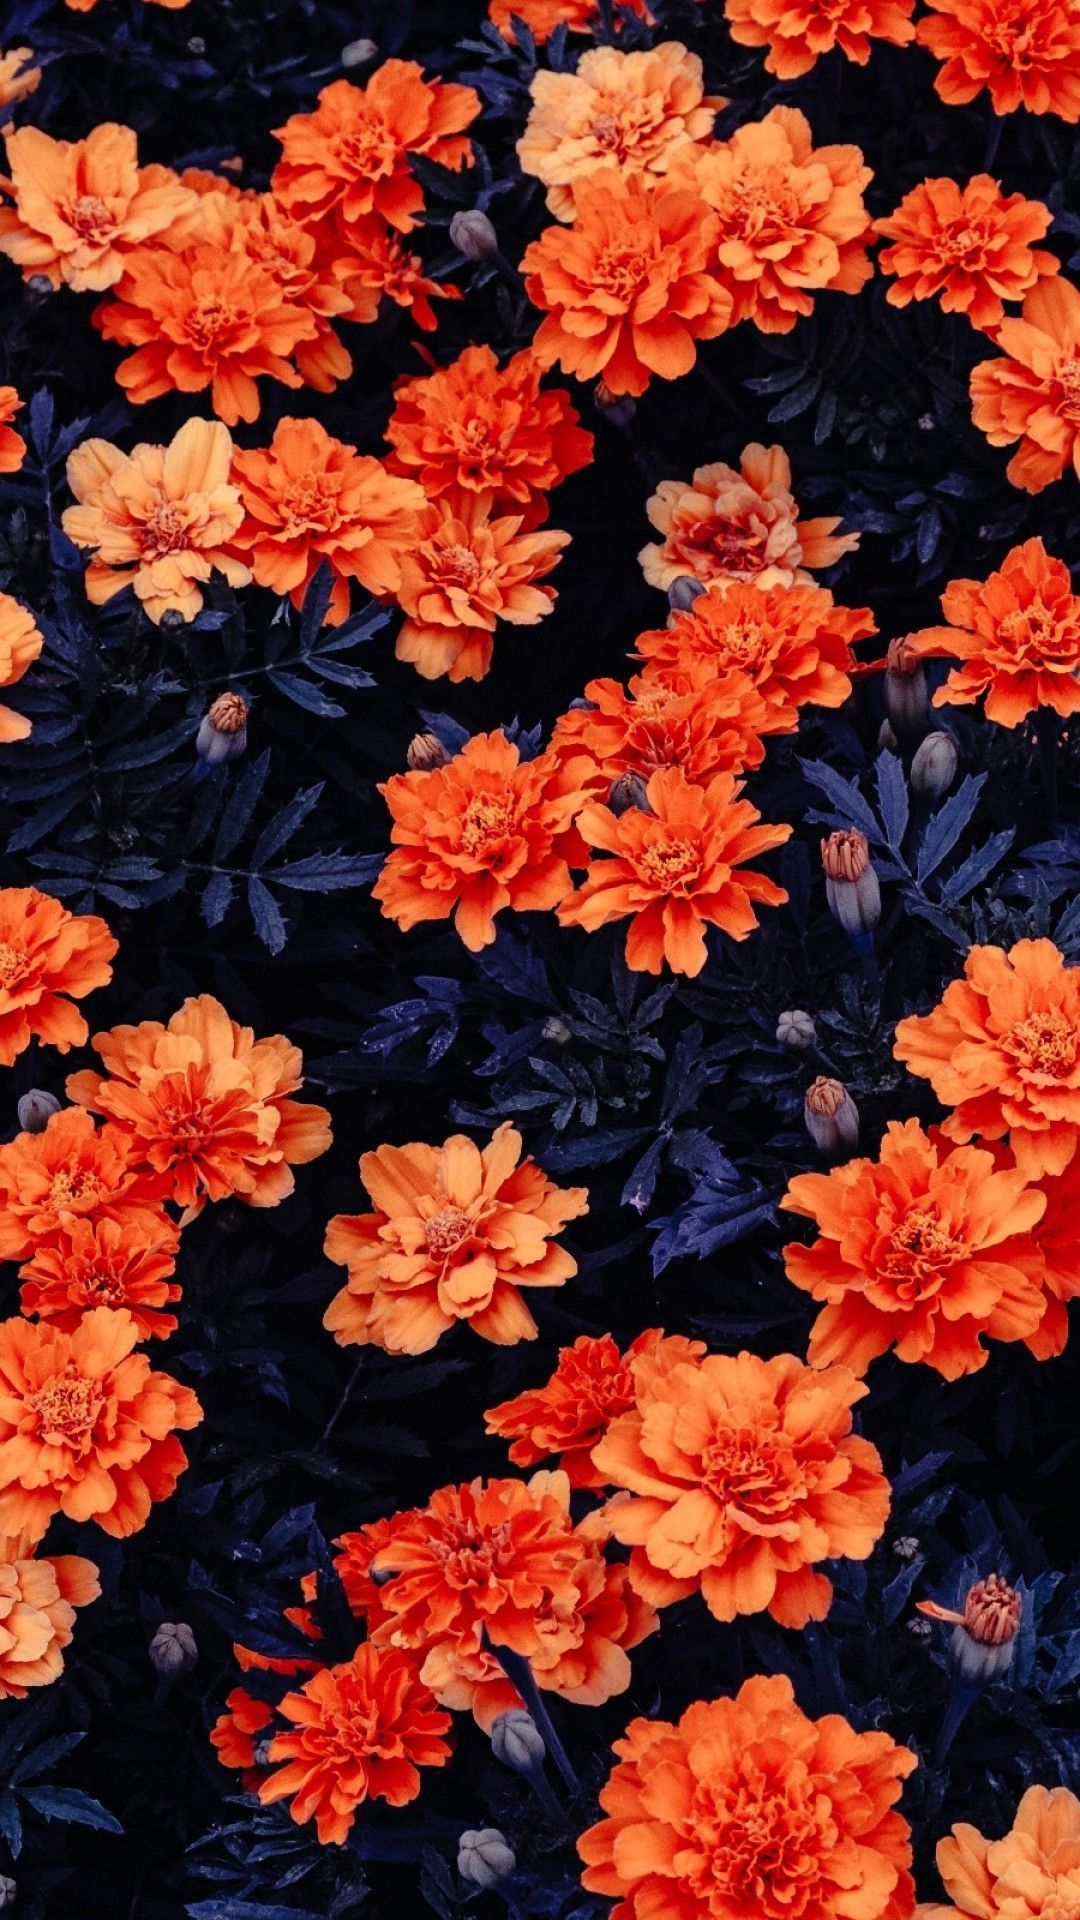 Orange Floral Background Images  Free Download on Freepik